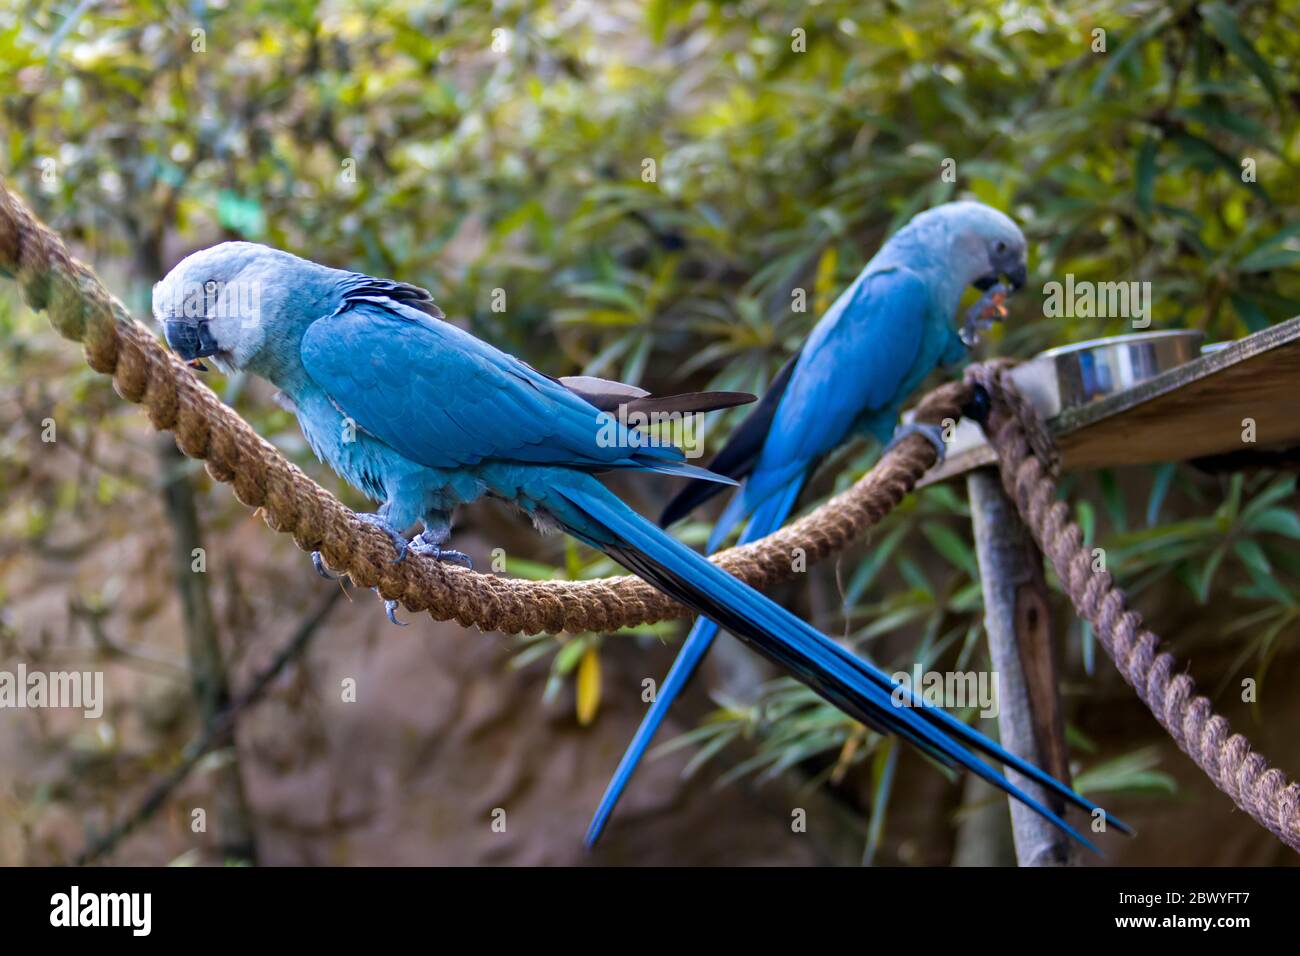 L'ara de Spix macaw est un indigène de Brésil. L'oiseau est un perroquet de taille moyenne. L'UICN ce qui concerne l'ara de Spix comme probablement éteinte à l'état sauvage. Banque D'Images